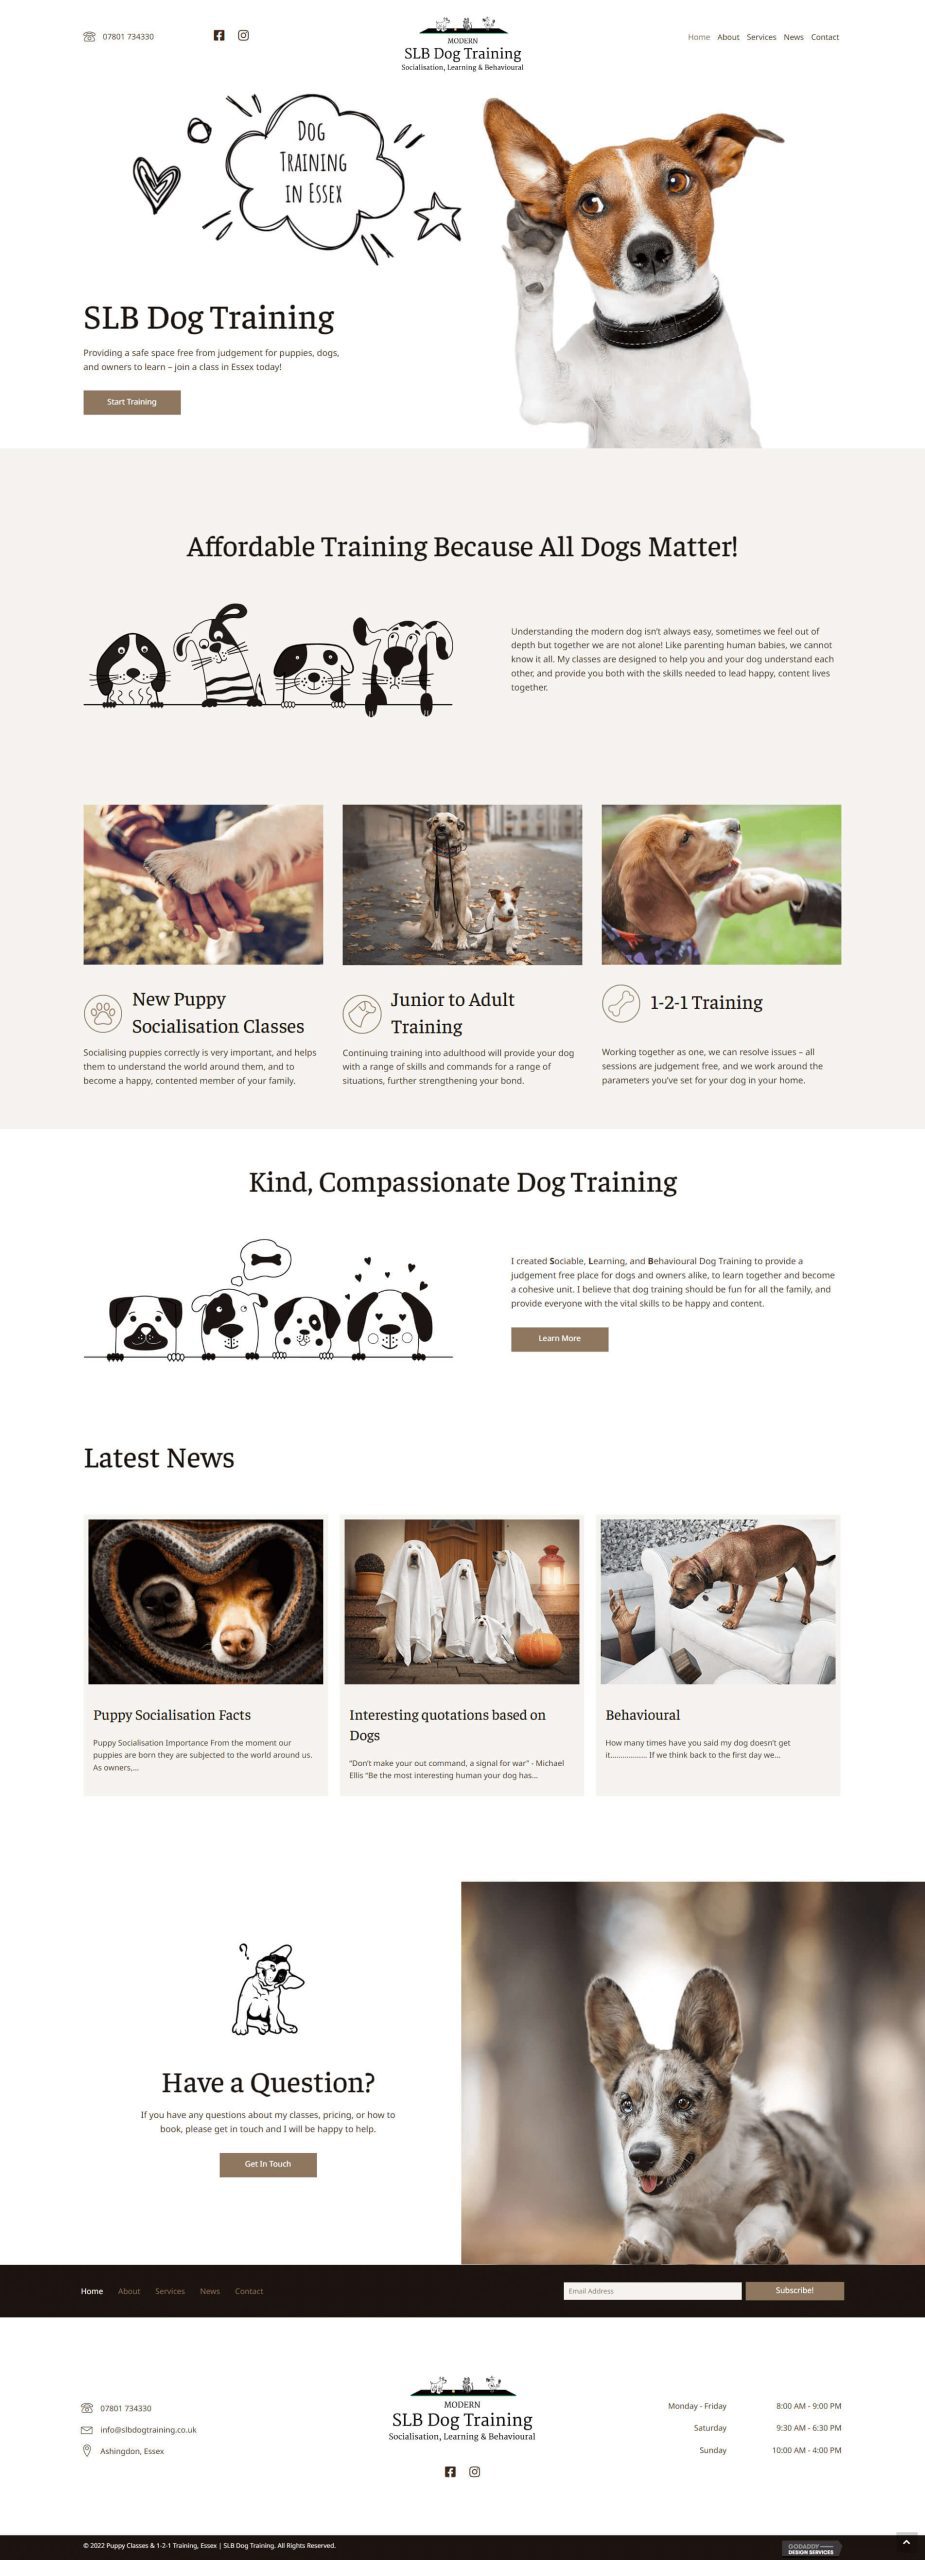 SLB-Dog-Training-homepage-desktop